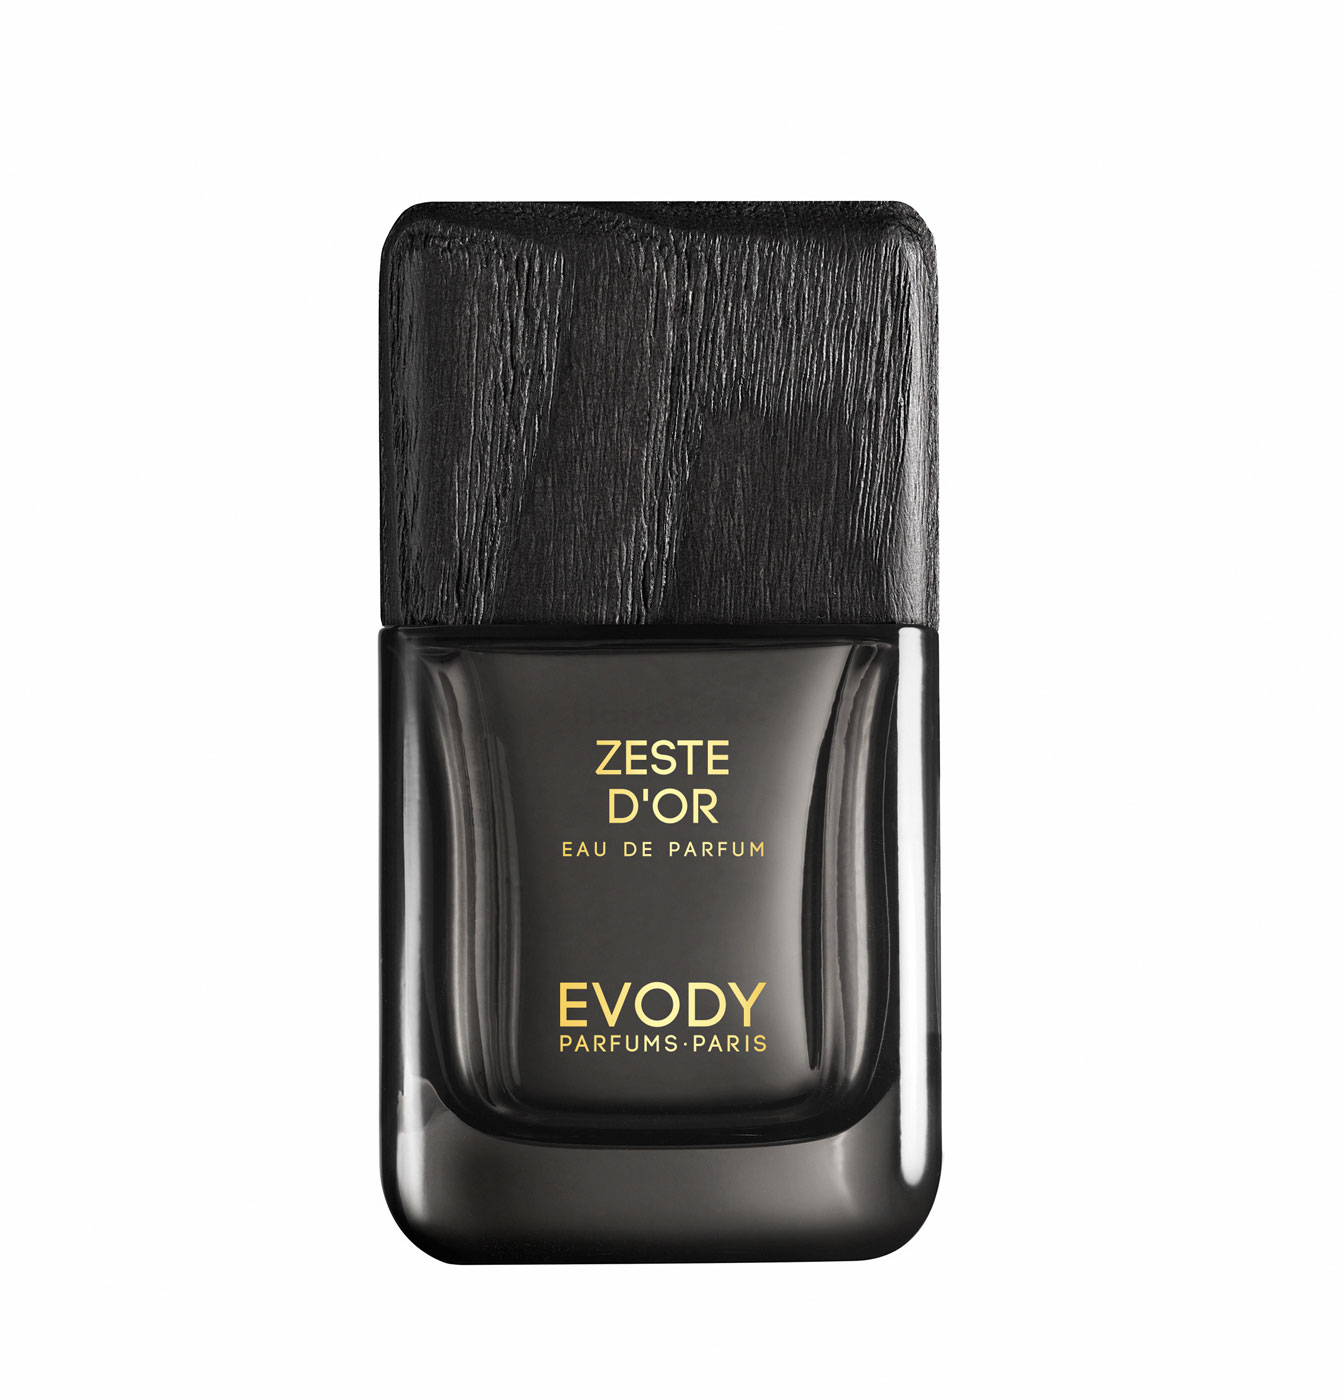 Evody - Collection Premiere - Zeste D'Or Eau de Parfum 50ml